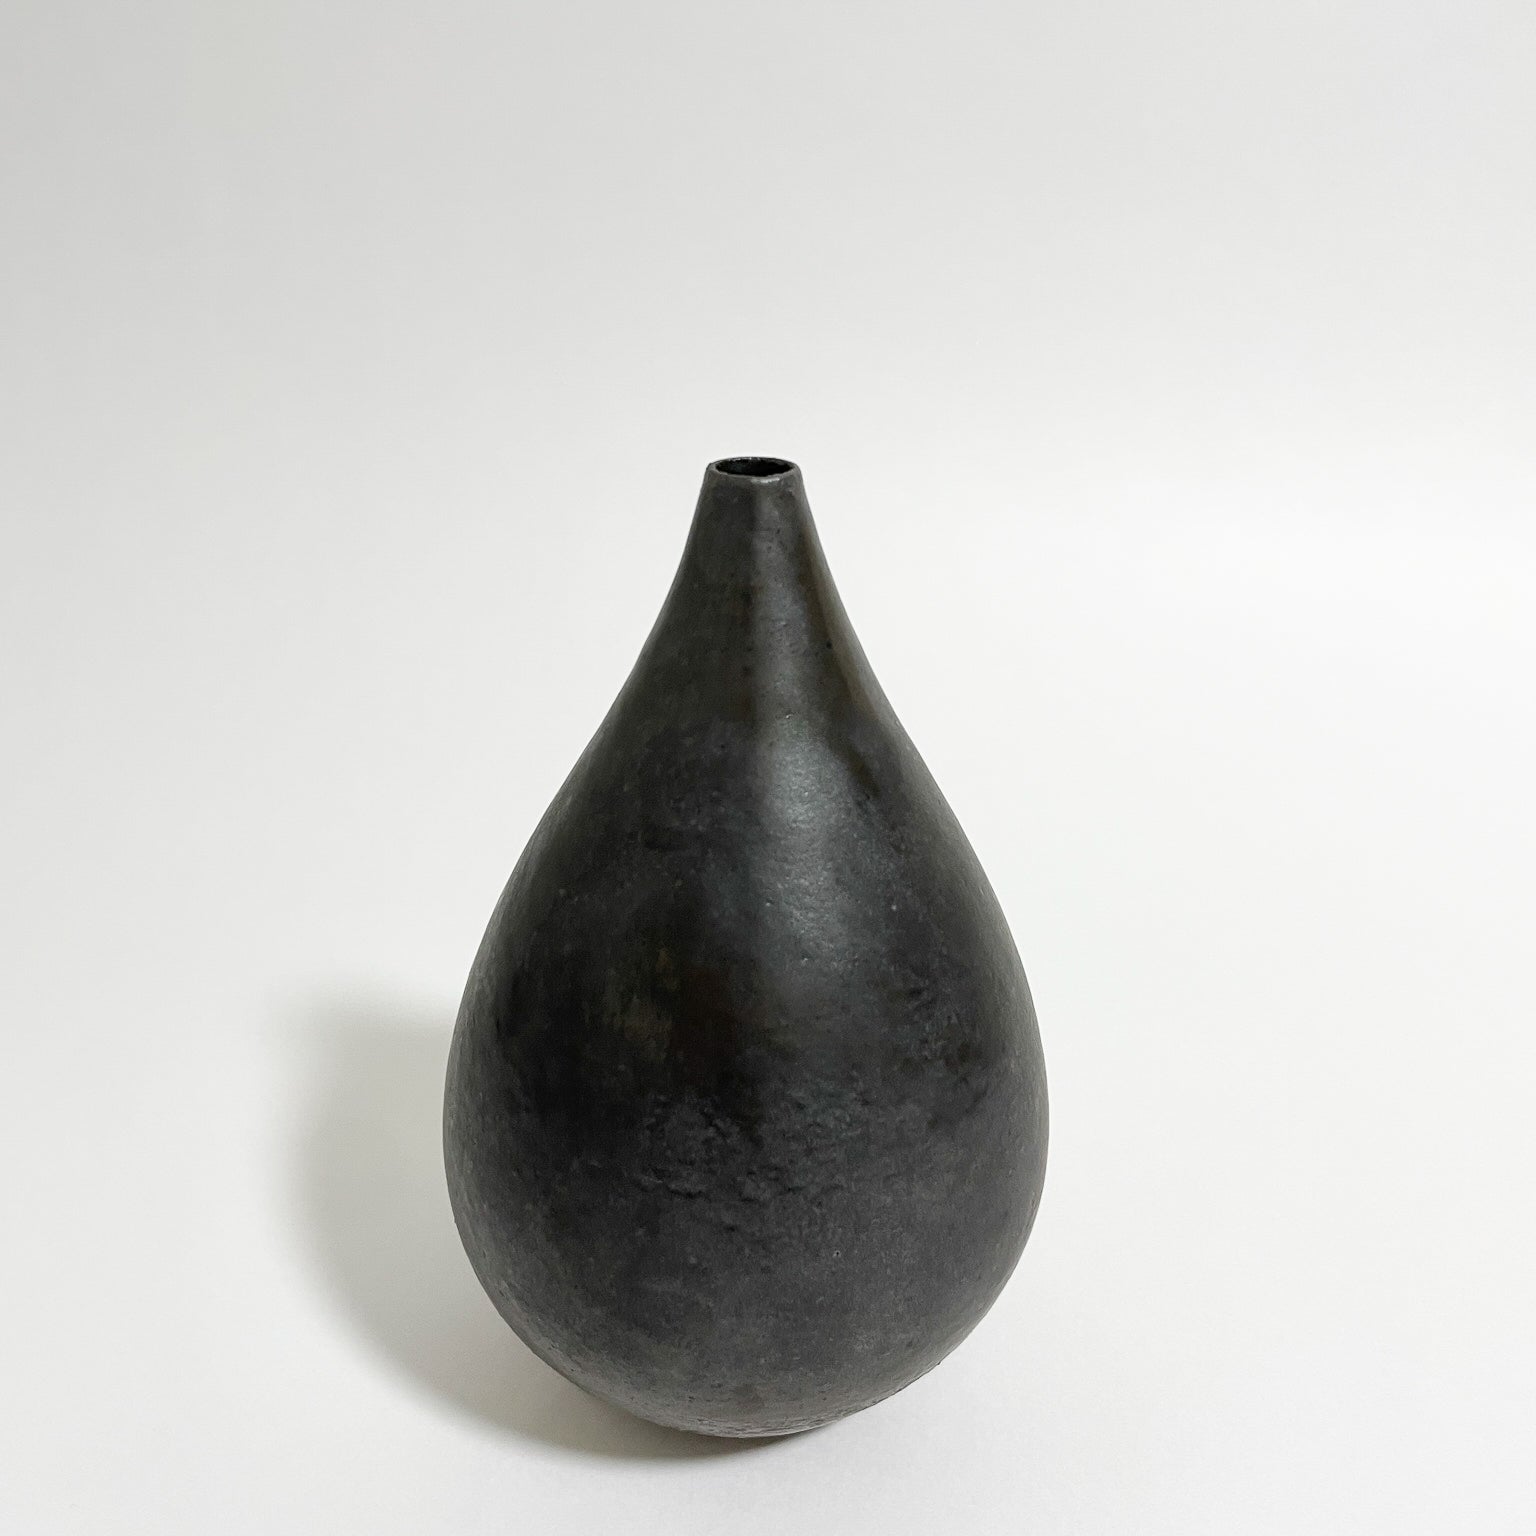 Agano Ware Flower Vase